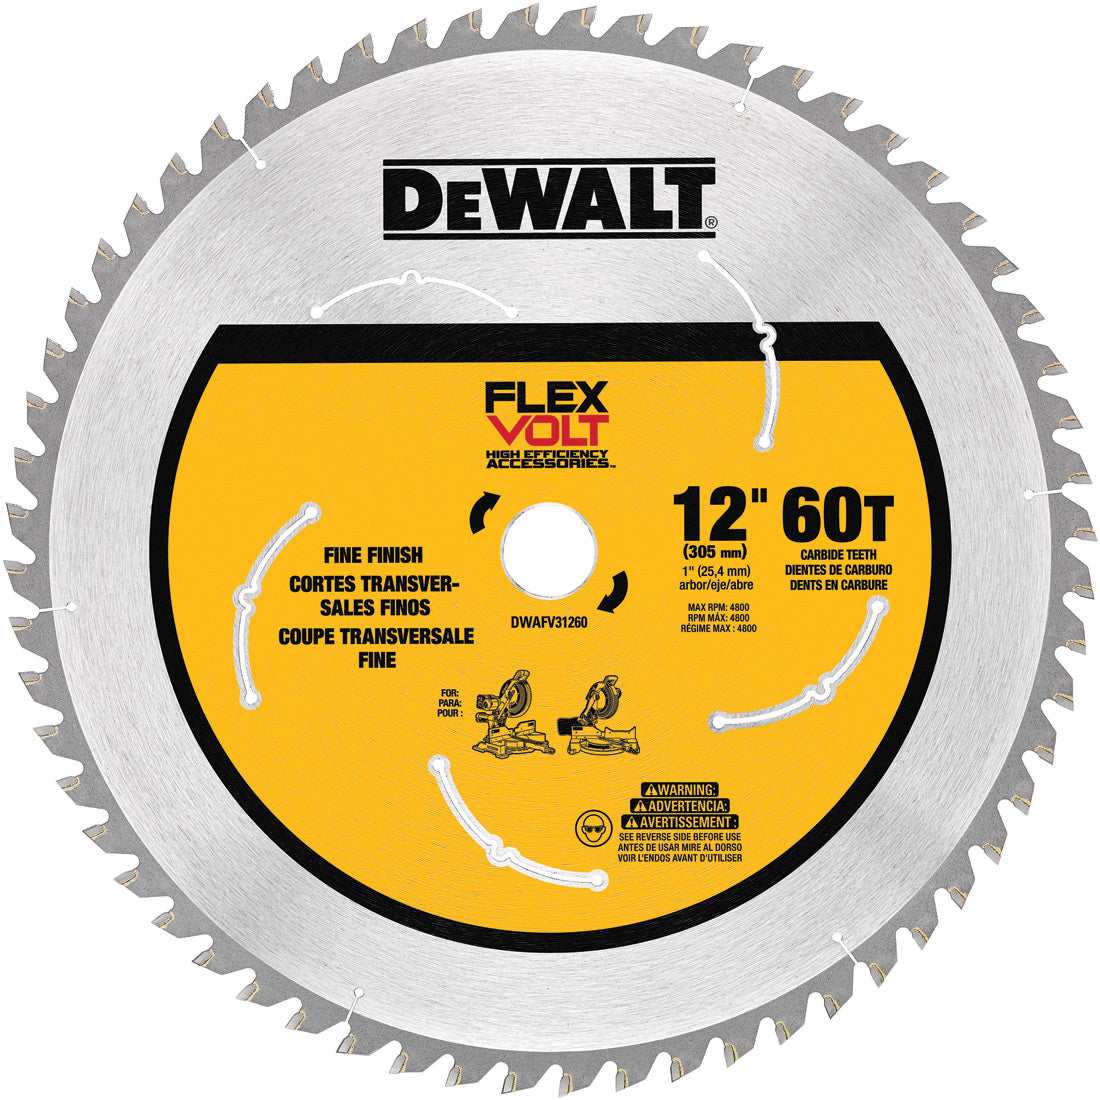 DeWalt DWAFV31260 12" 60T Saw blade